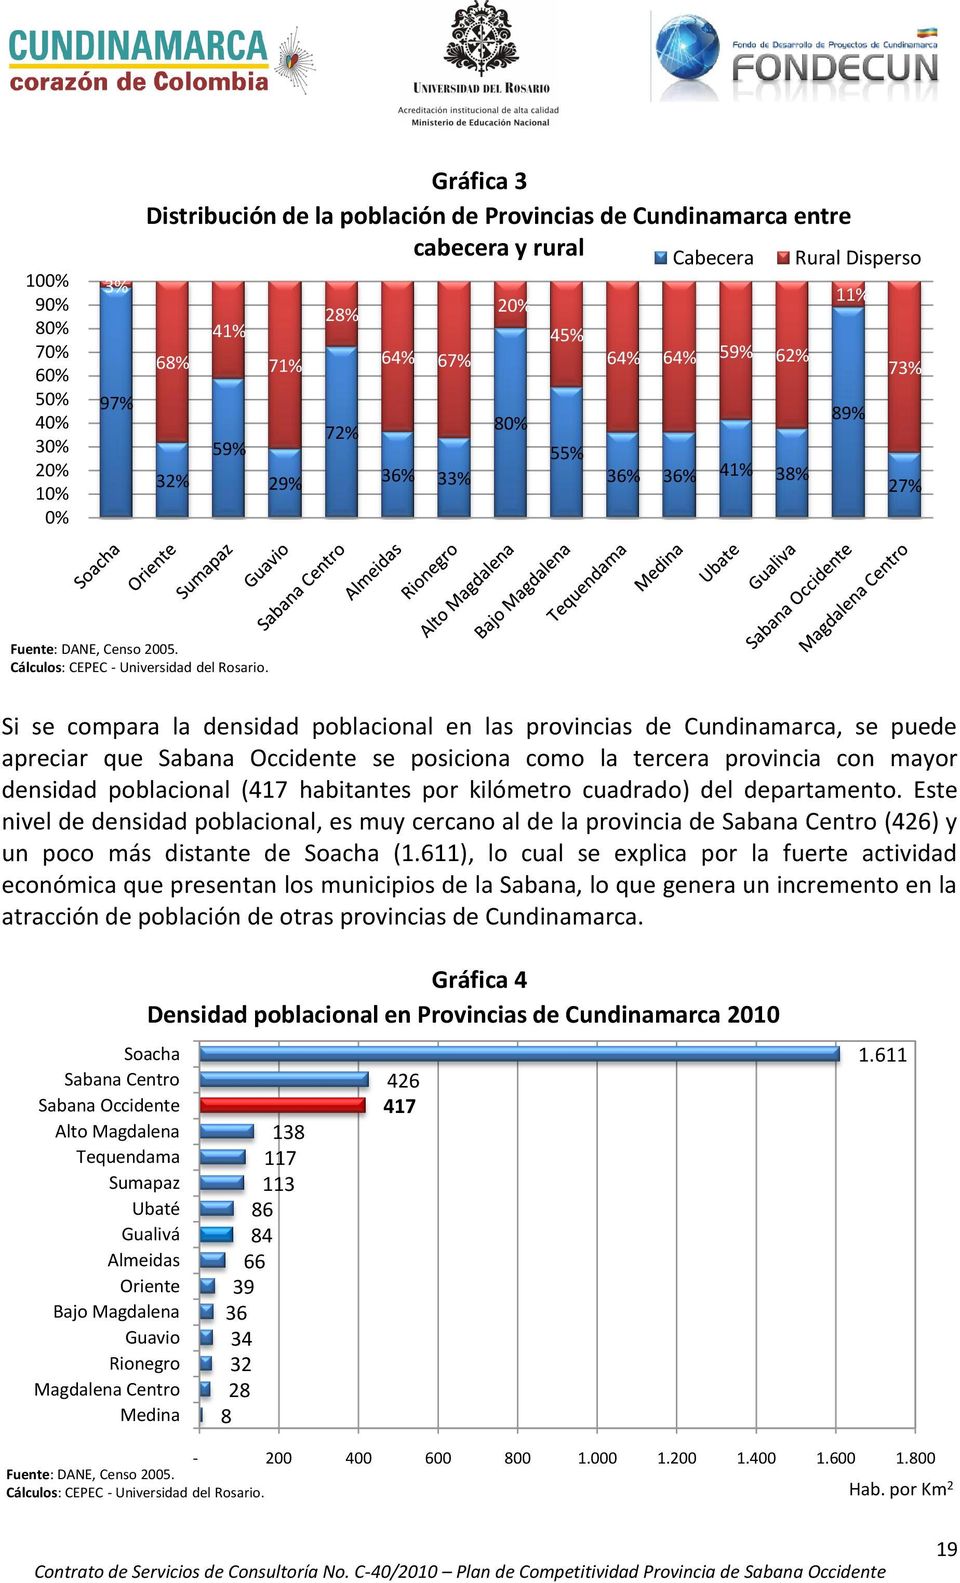 Si se compara la densidad poblacional en las provincias de Cundinamarca, se puede apreciar que Sabana Occidente se posiciona como la tercera provincia con mayor densidad poblacional (417 habitantes